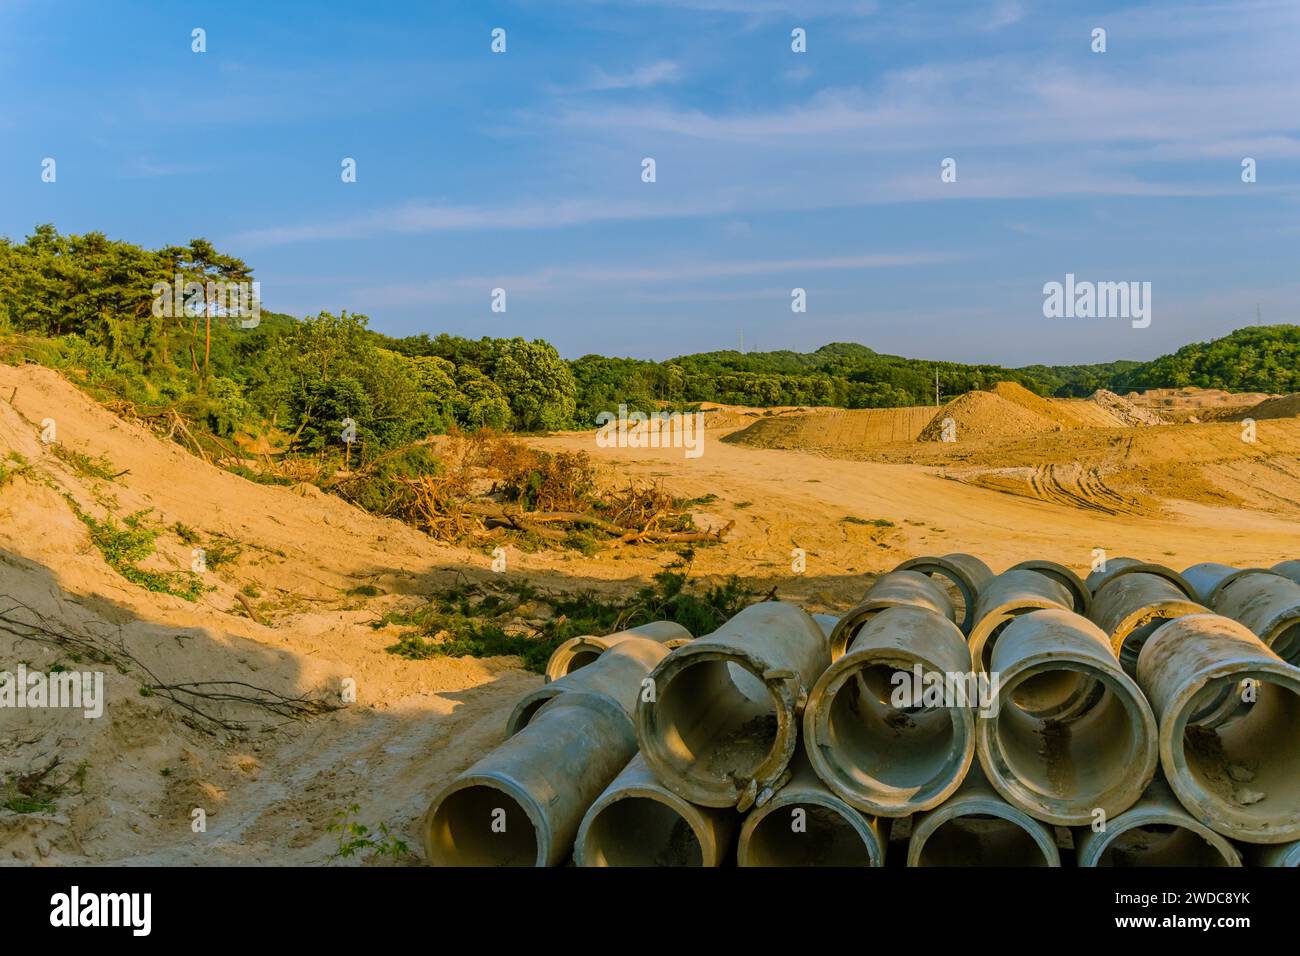 Landschaft aus Land, das für die Erschließung gerodet wurde, mit großen Betonabflussrohren, die im Vordergrund zusammengestapelt sind, Südkorea Stockfoto